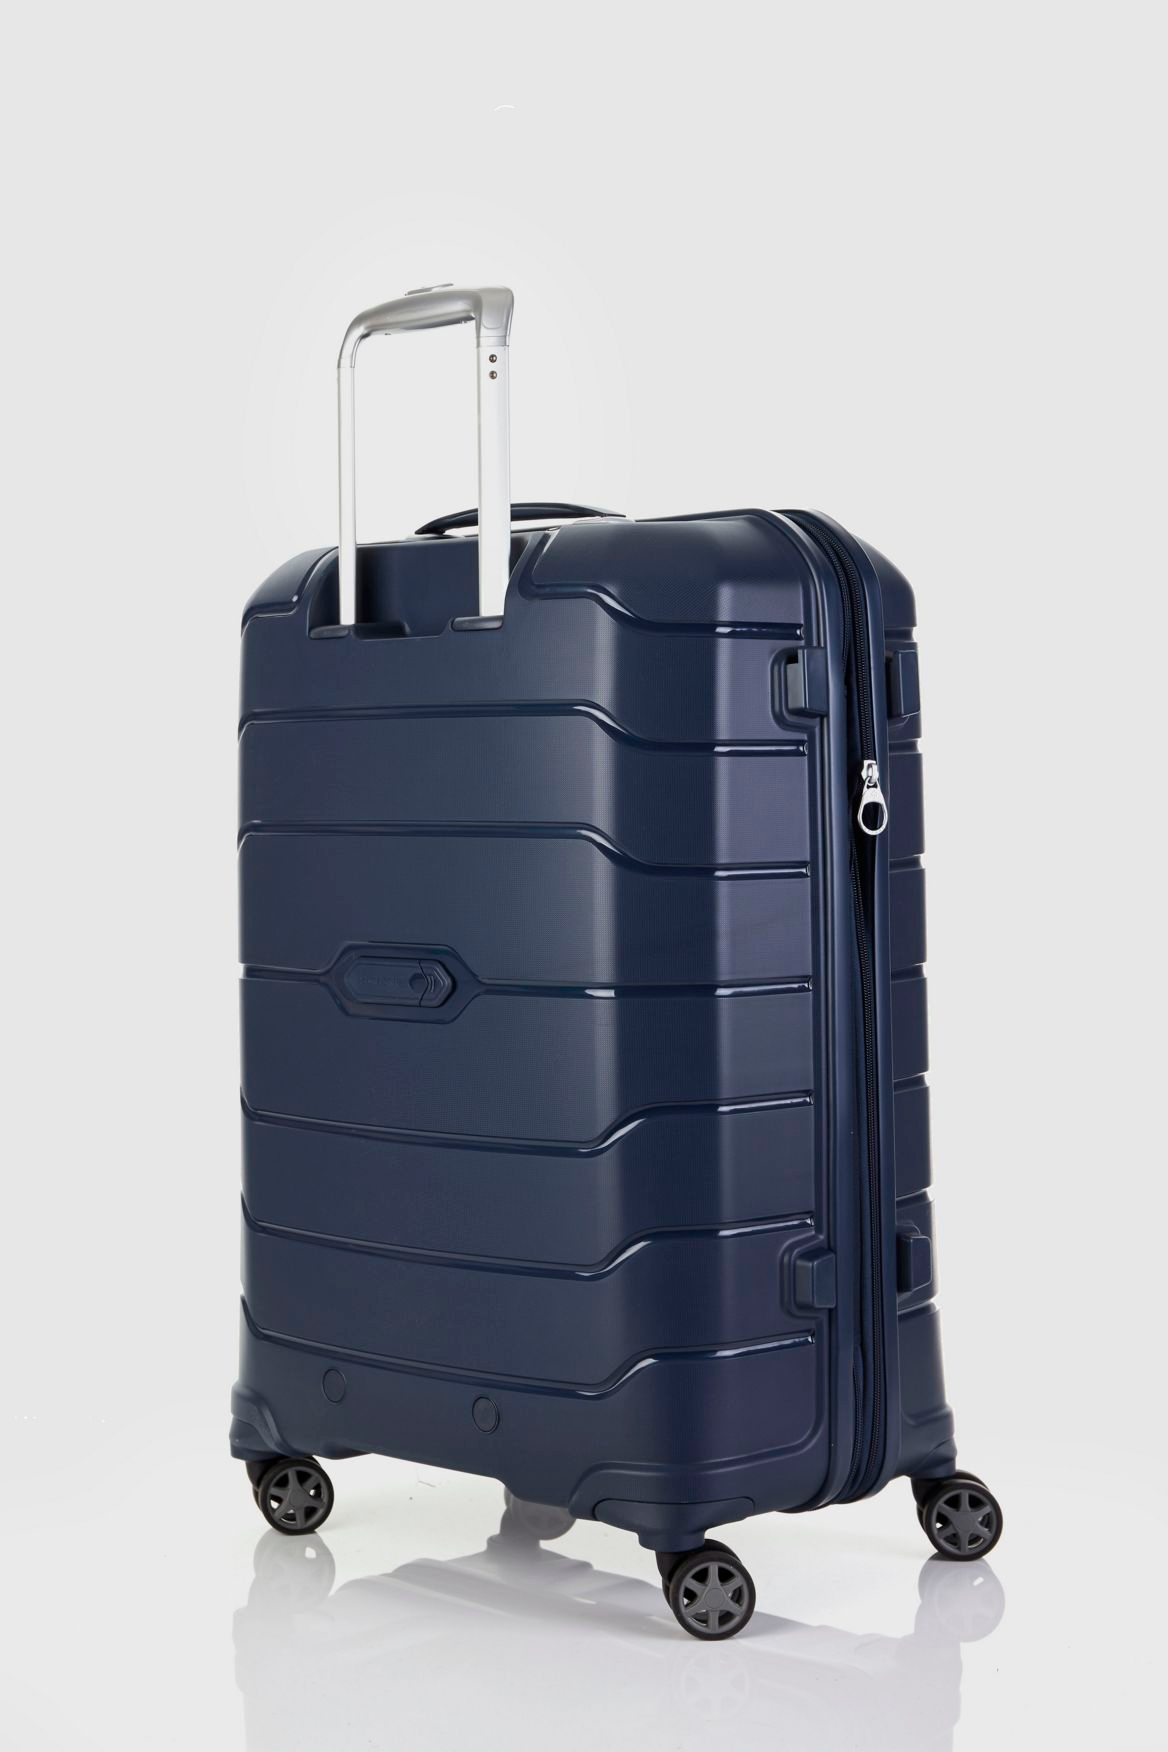 Samsonite Oc2lite 68cm Suitcase – Strandbags Australia